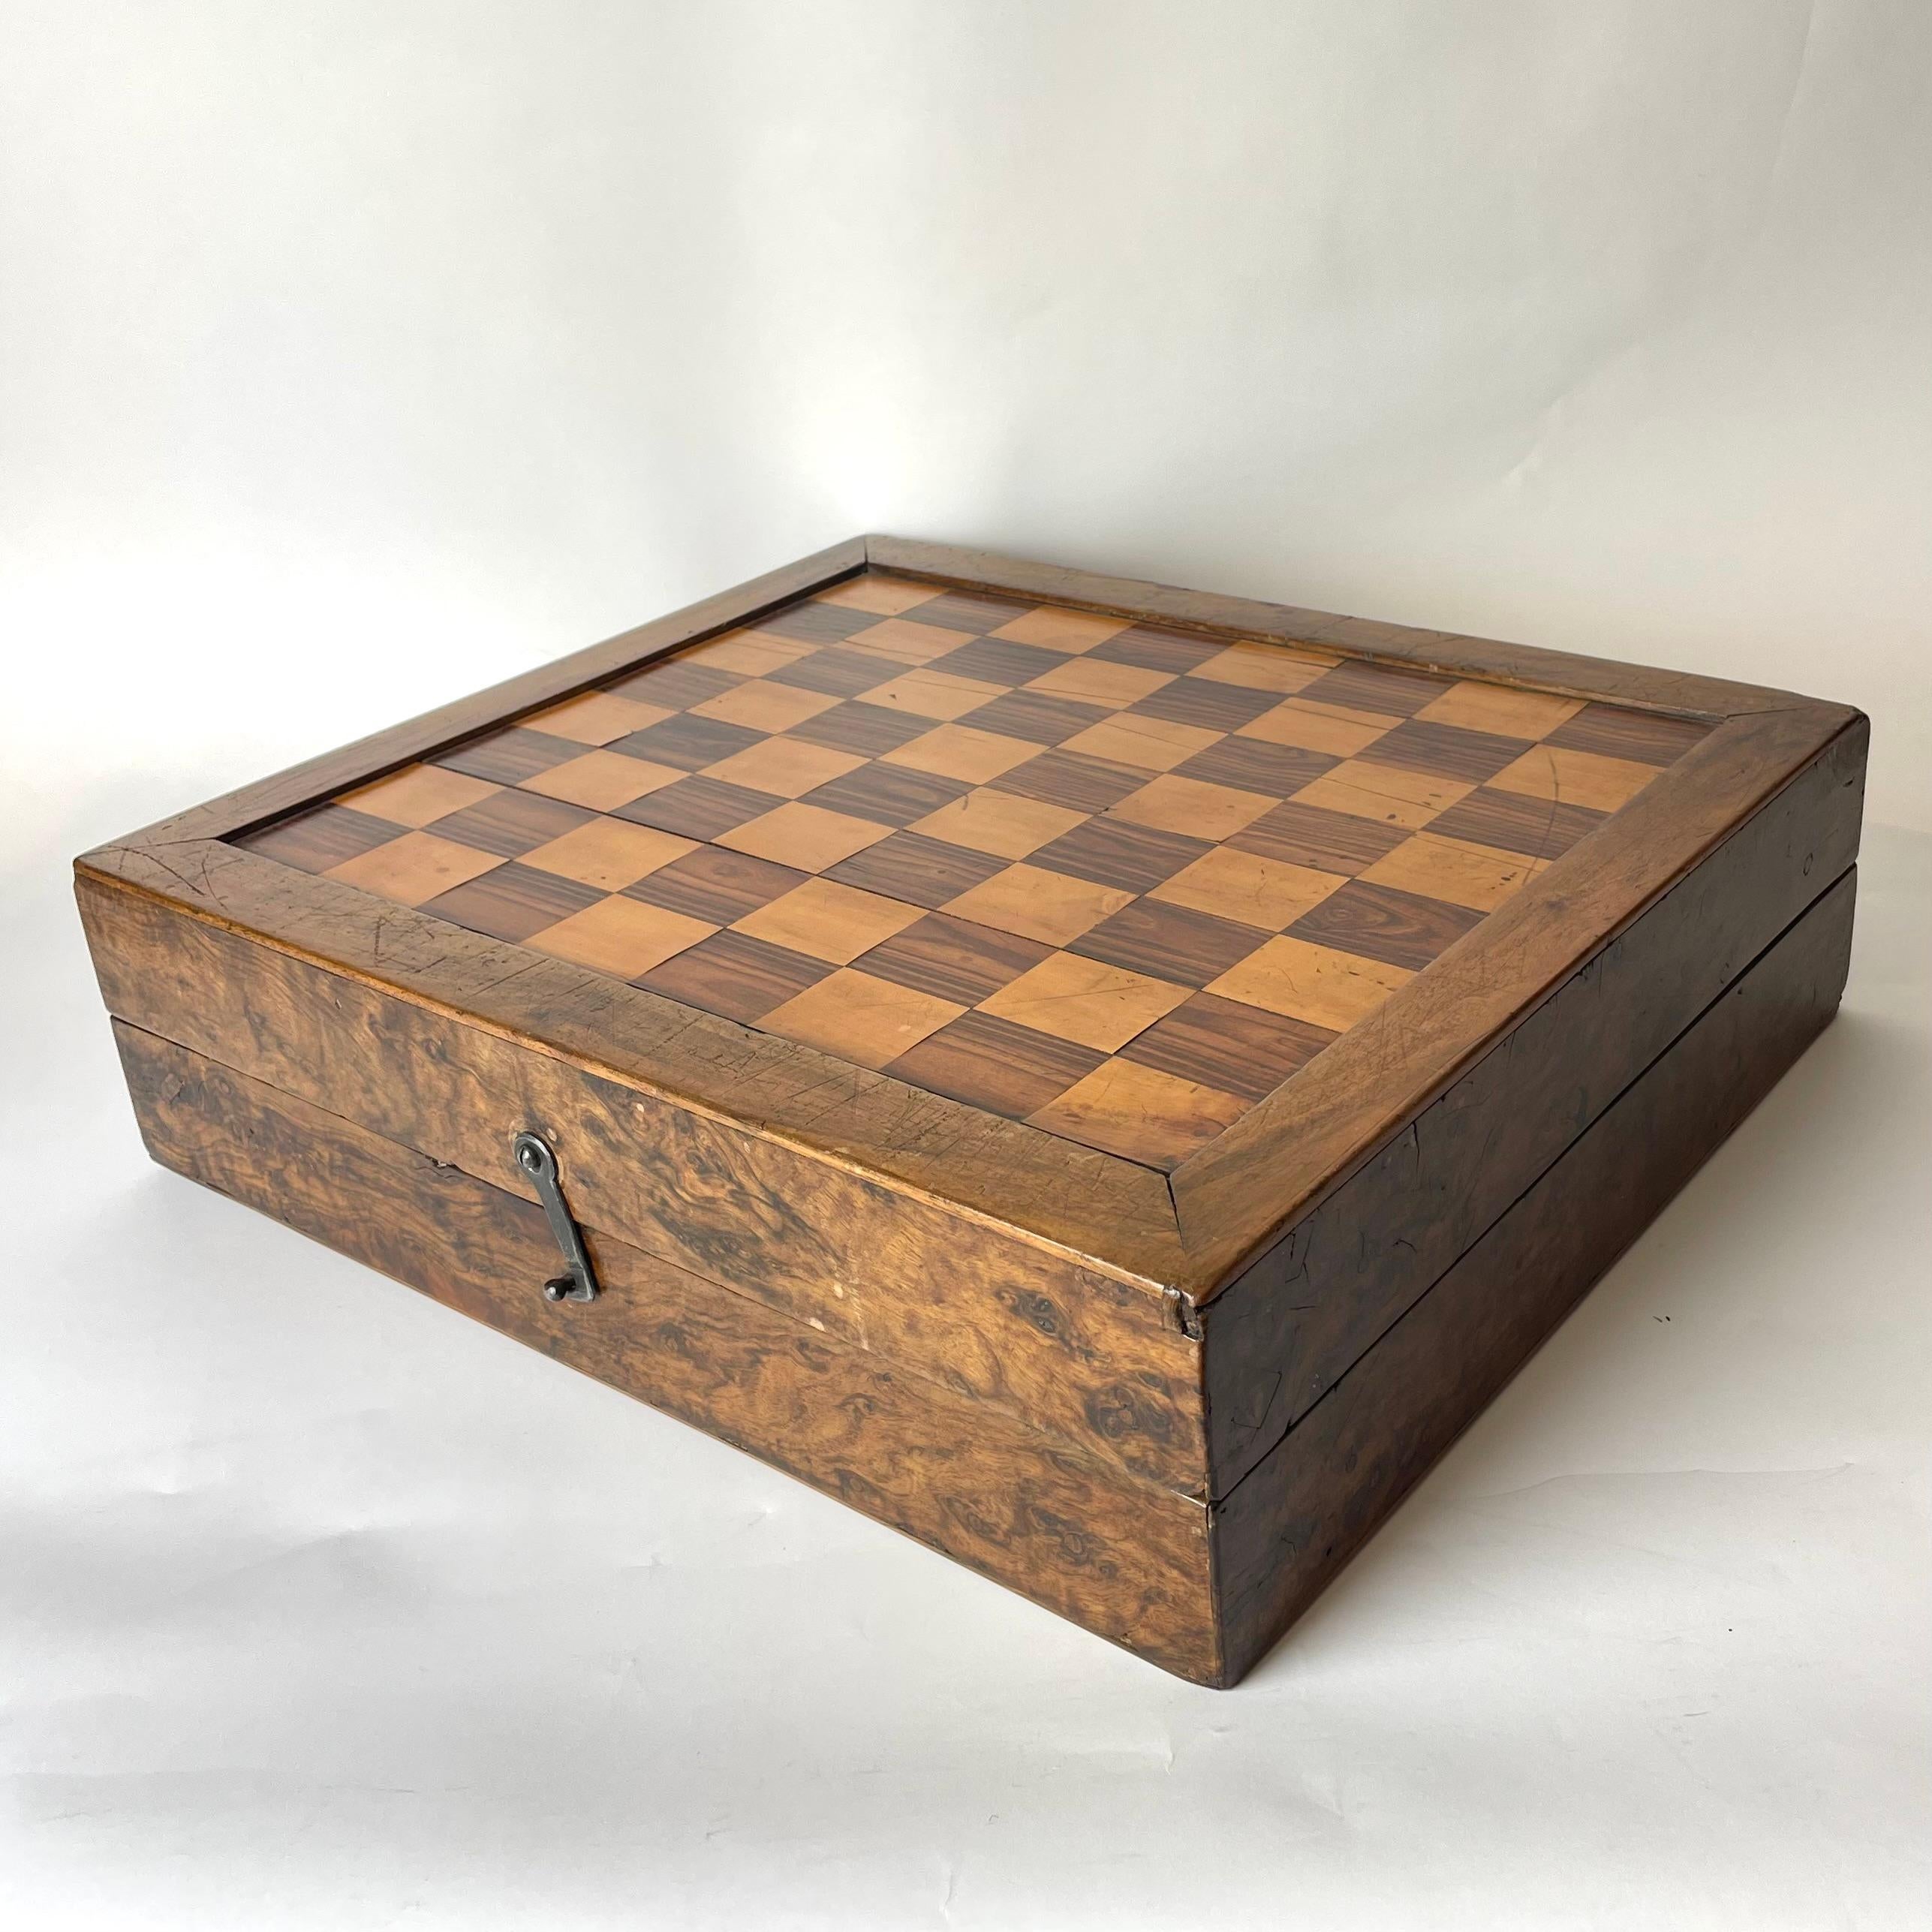 Eine schöne spätbarocke Schachtel, die für Schach/Backgammon und Morris-Spielfiguren verwendet wurde. Reichhaltige Innen- und Außendekoration mit verschiedenen Holzarten, darunter Olive, Nussbaum und Birke. Ende 17. Jahrhundert/Anfang 18.